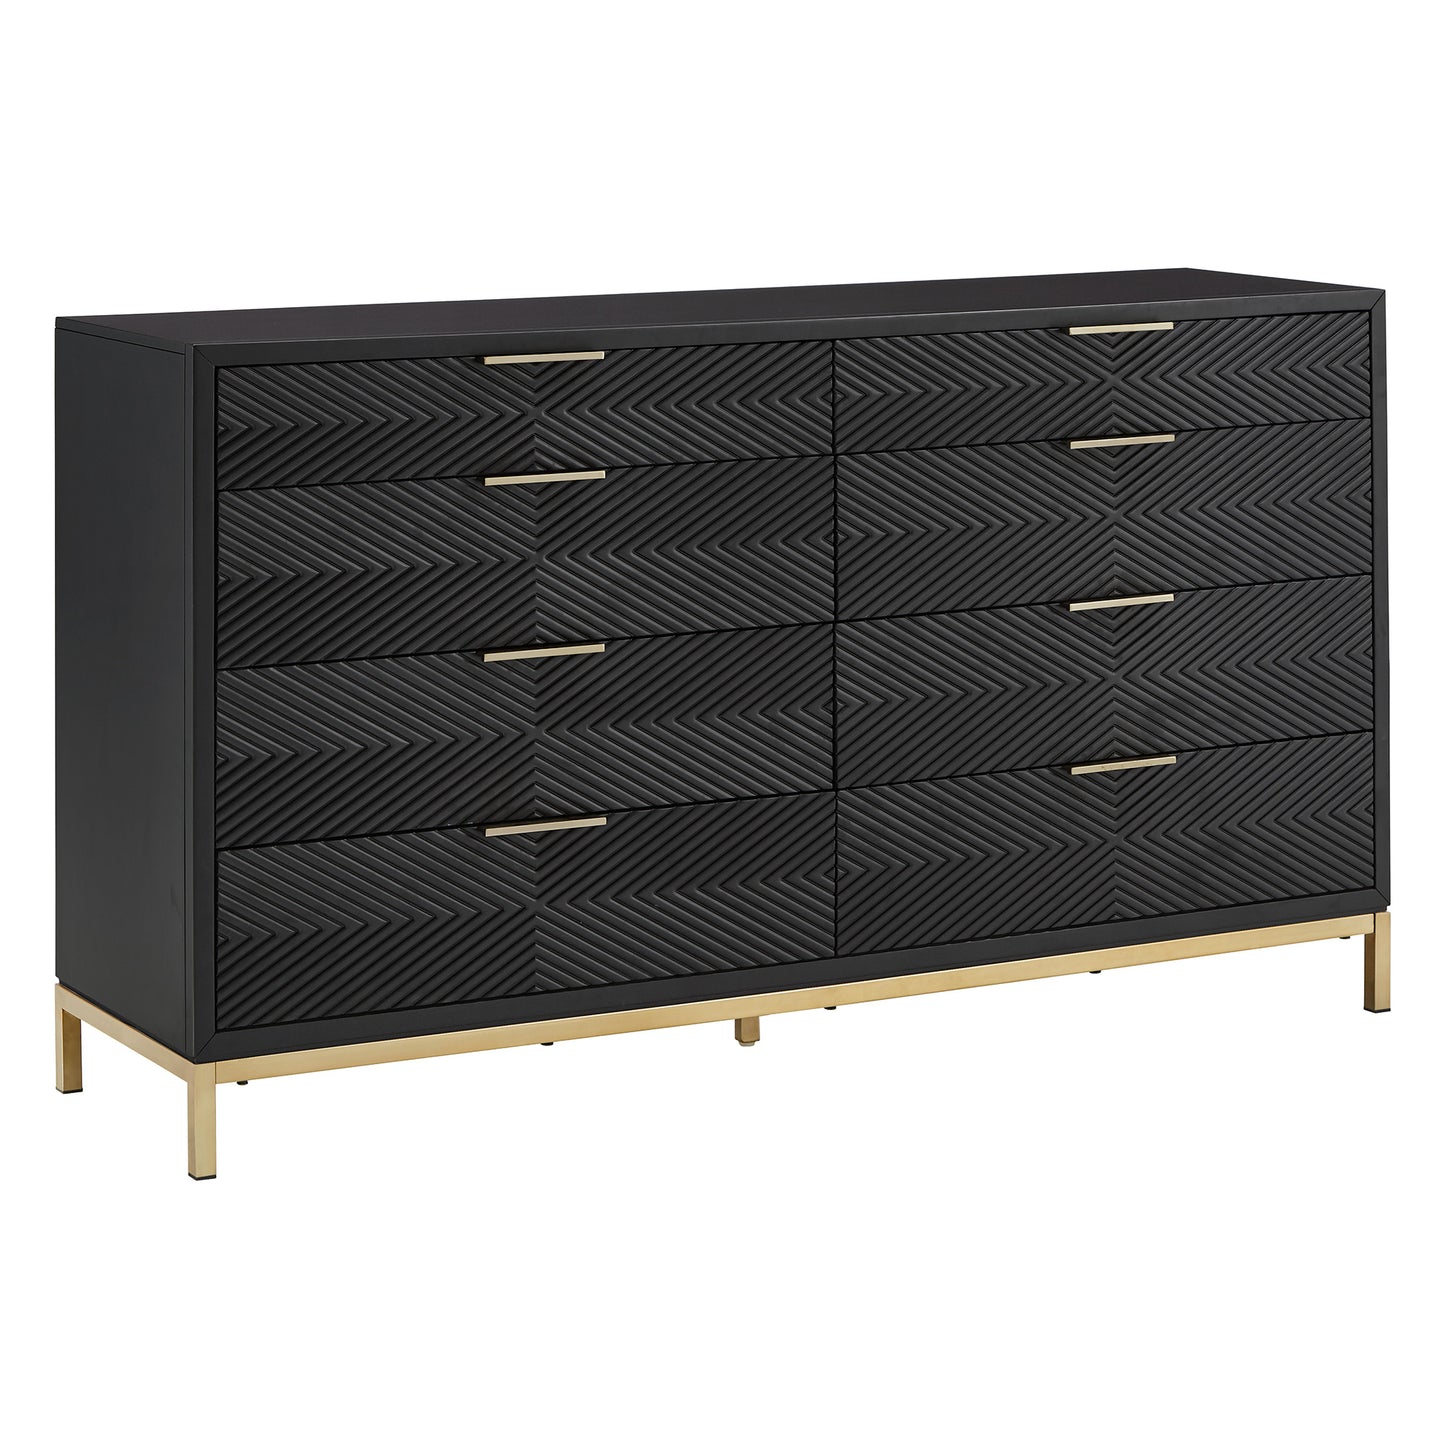 64" Wide 8 - Drawer Dresser - Black Finish, Gold Accent, Dresser Only